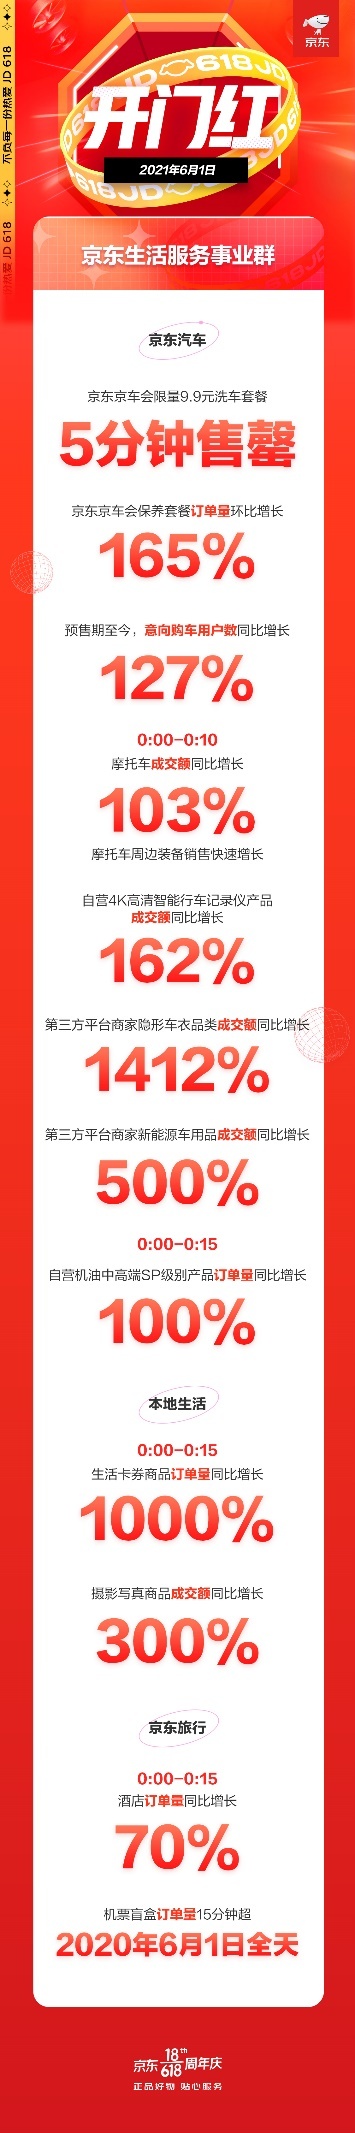 京东618生活服务迎来开门红 京东京车会保养套餐预定量环比增长165%